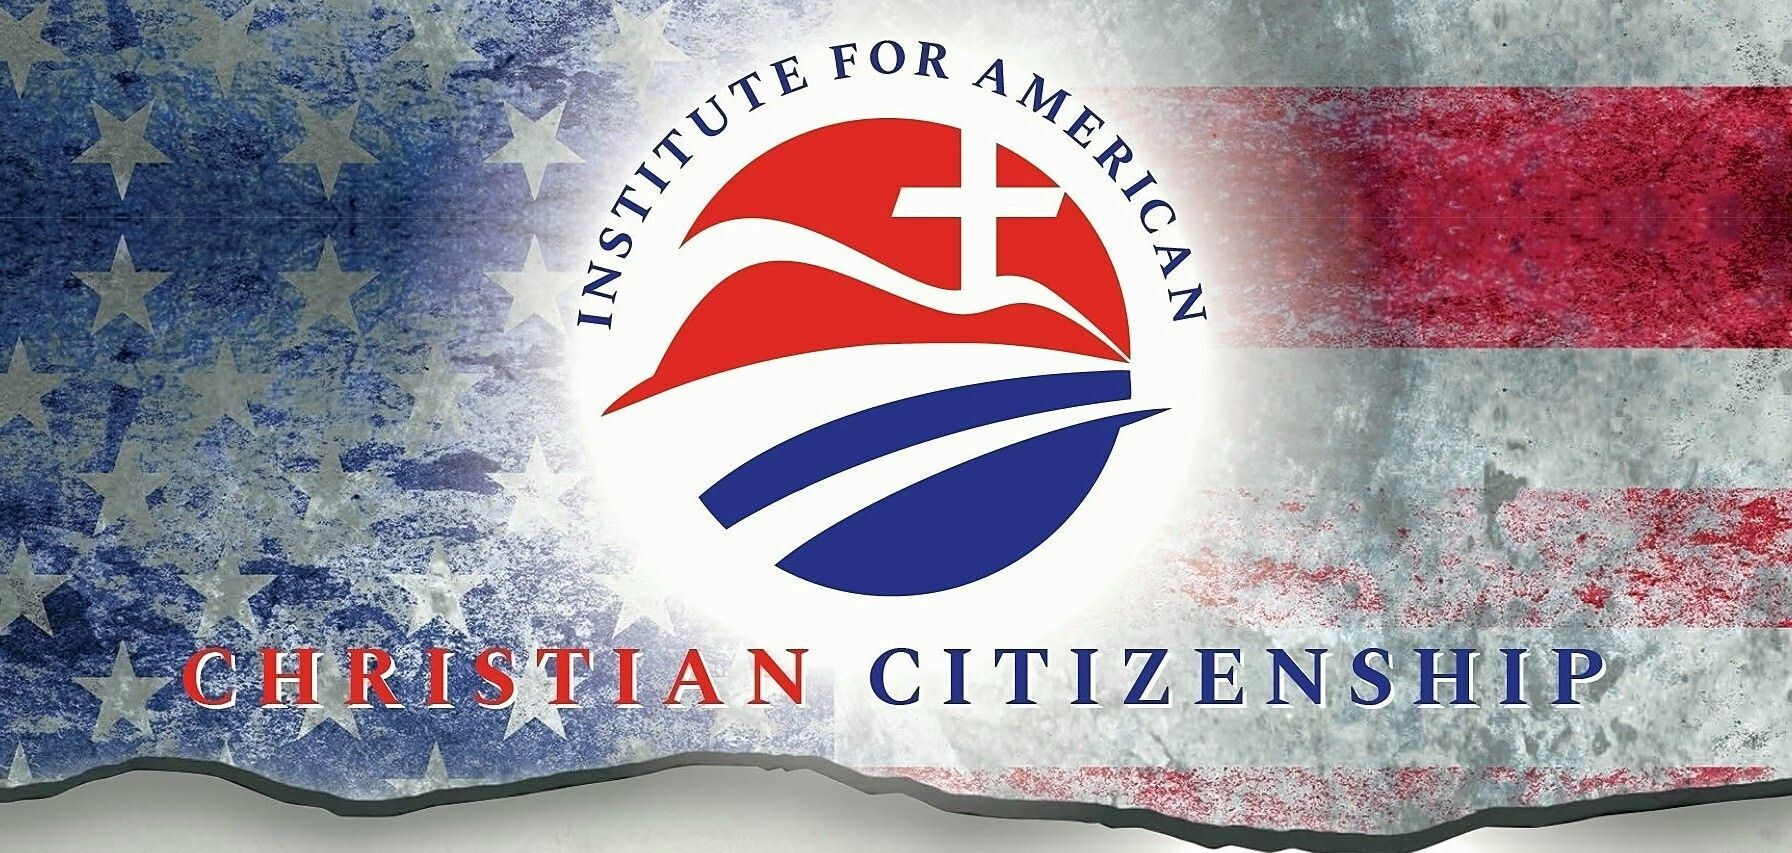 August 18 NE Houston Institute for American Christian Citizenship!